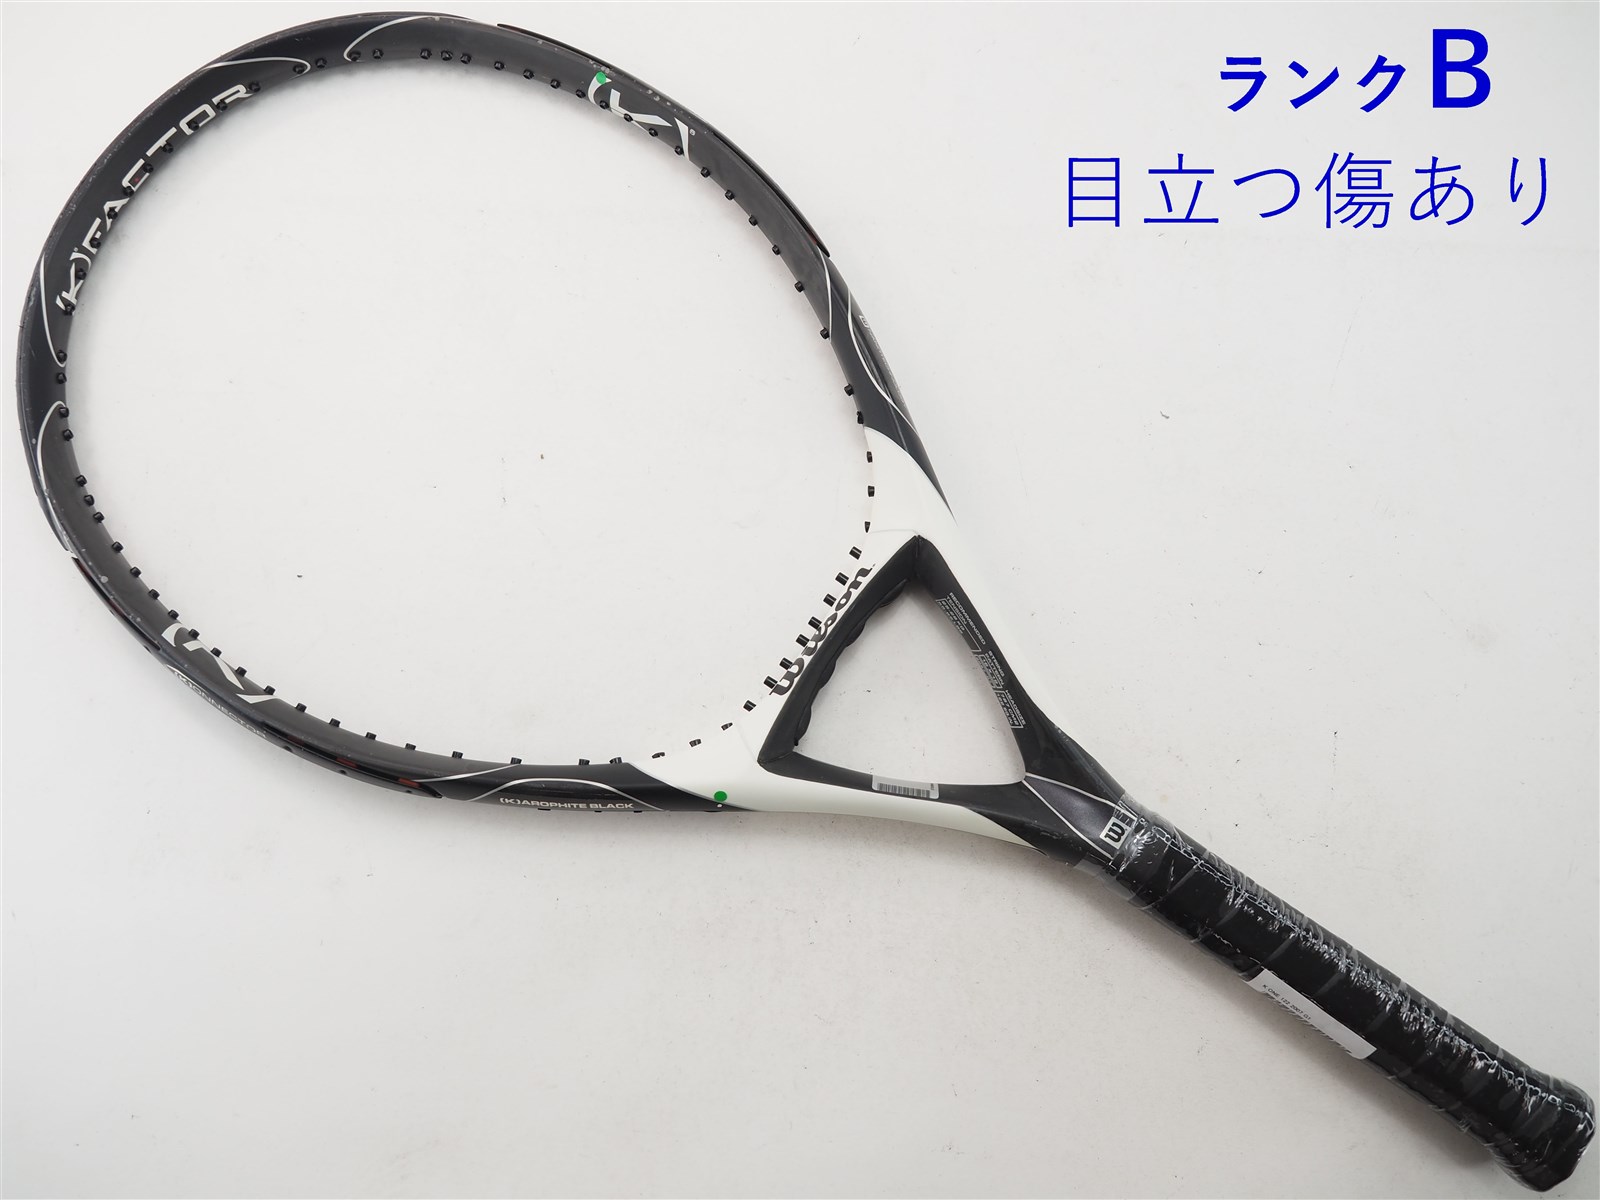 テニスラケット ウィルソン K ワン 122 2007年モデル (G2)WILSON K ONE 122 2007